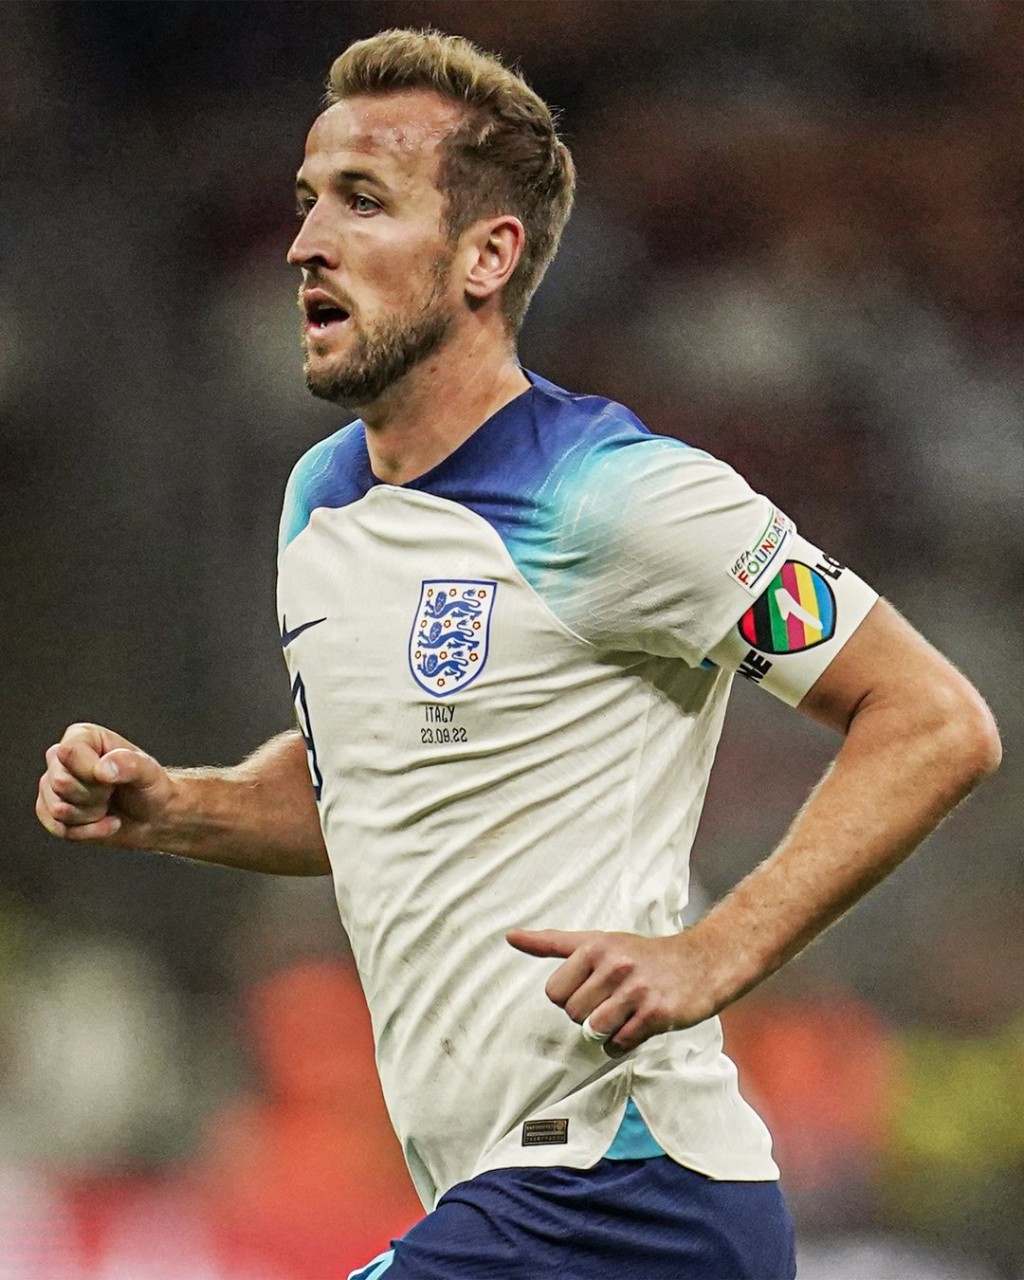 7支欧洲球队宣布放弃佩戴印有“同一份爱”（One Love）彩虹臂章，图为英格兰队长Harry Kane。  twitter图